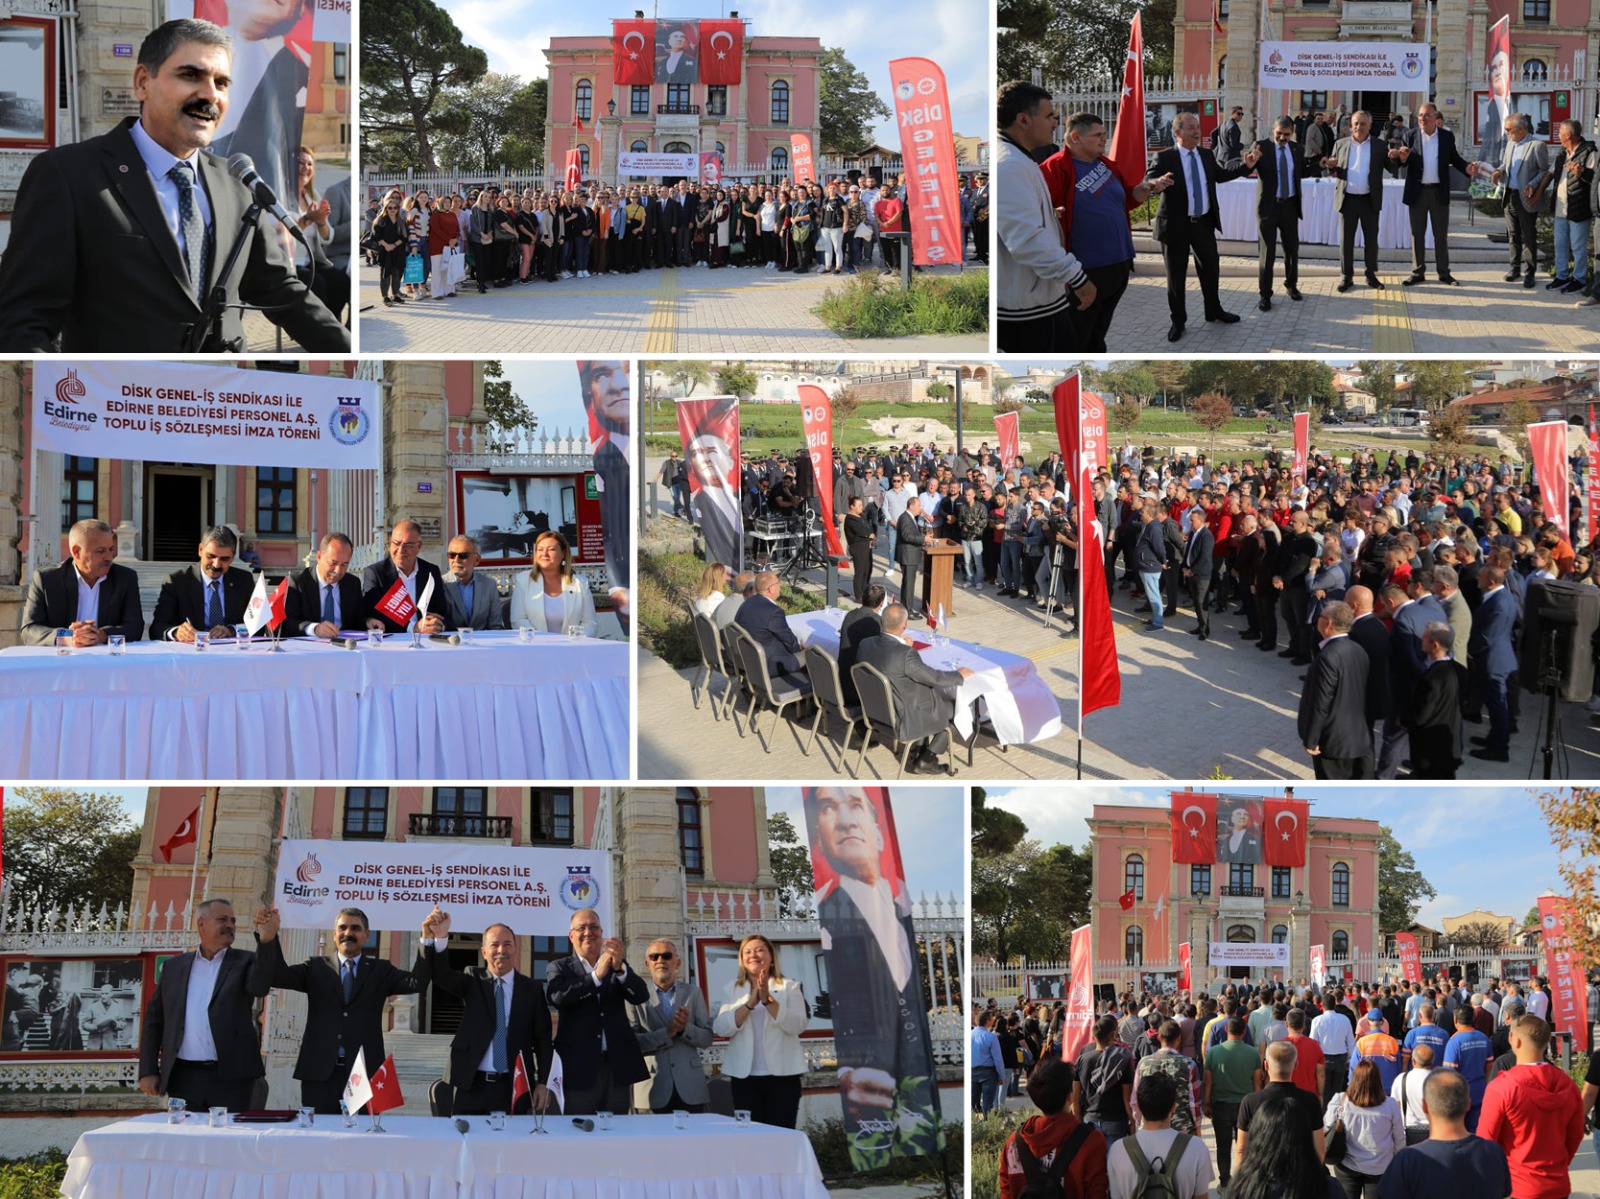 Sendikamız İle Edirne Belediyesi Arasında Toplu İş Sözleşmesi İmzalandı